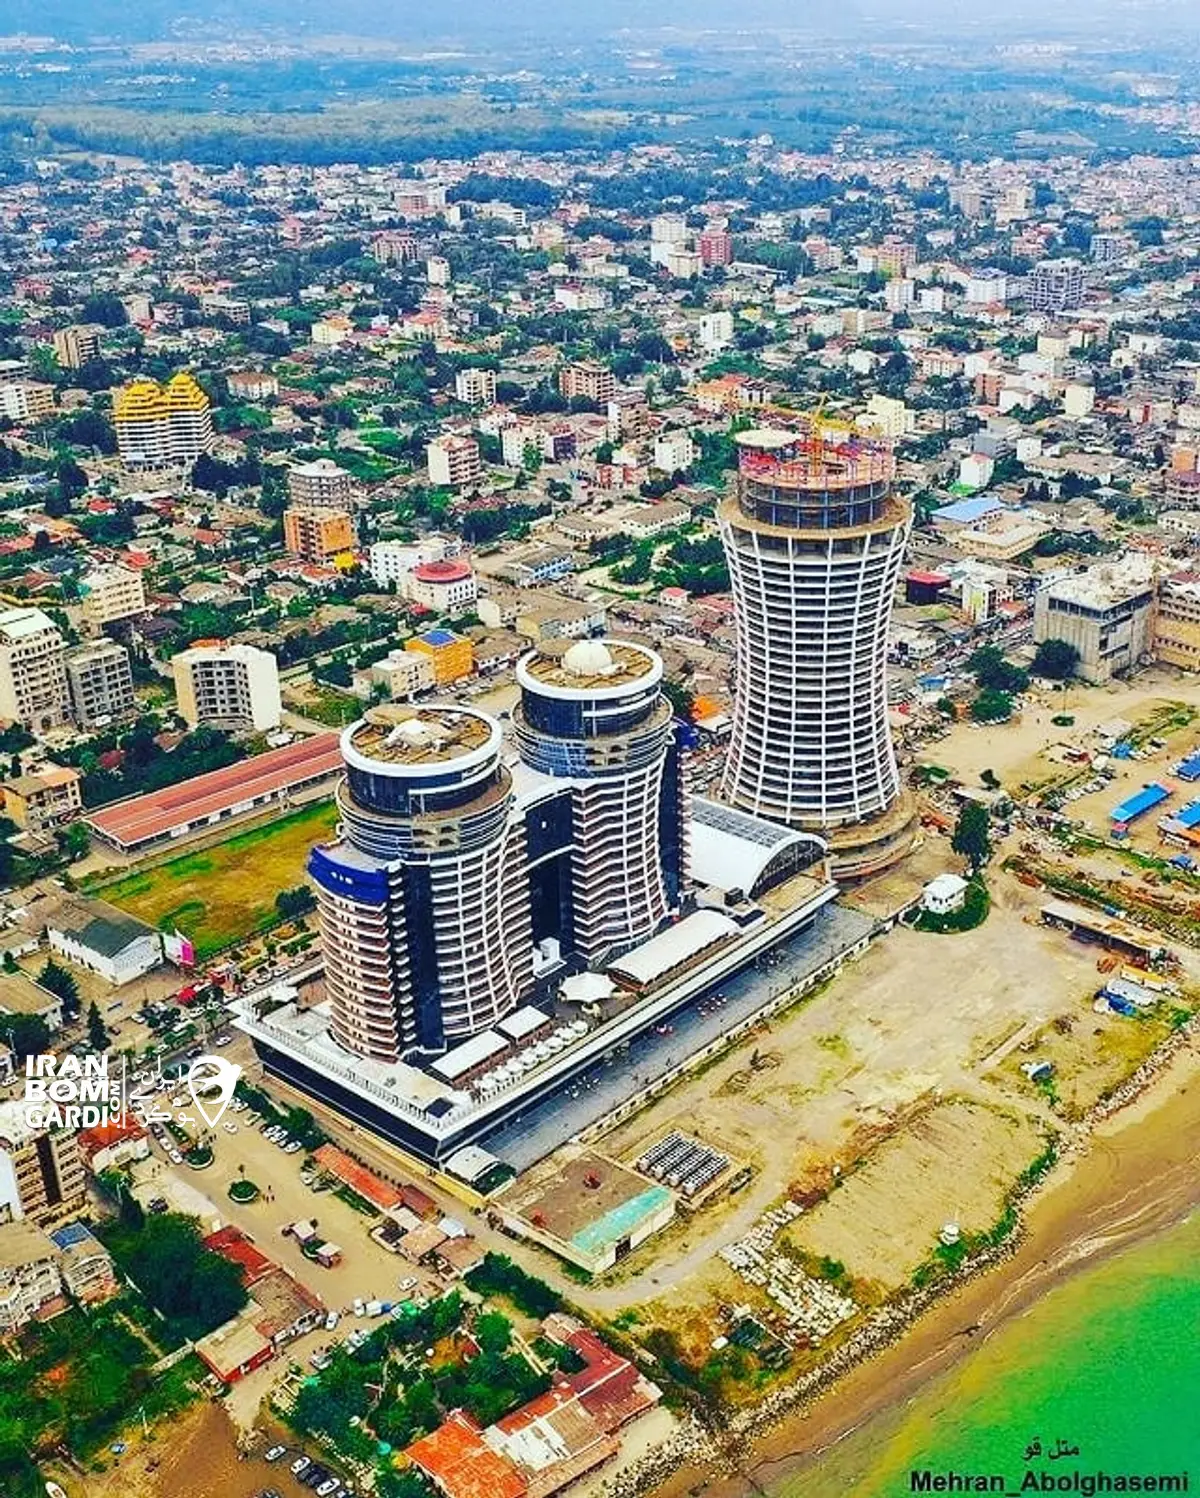 تصویر هوایی از سلمان شهر